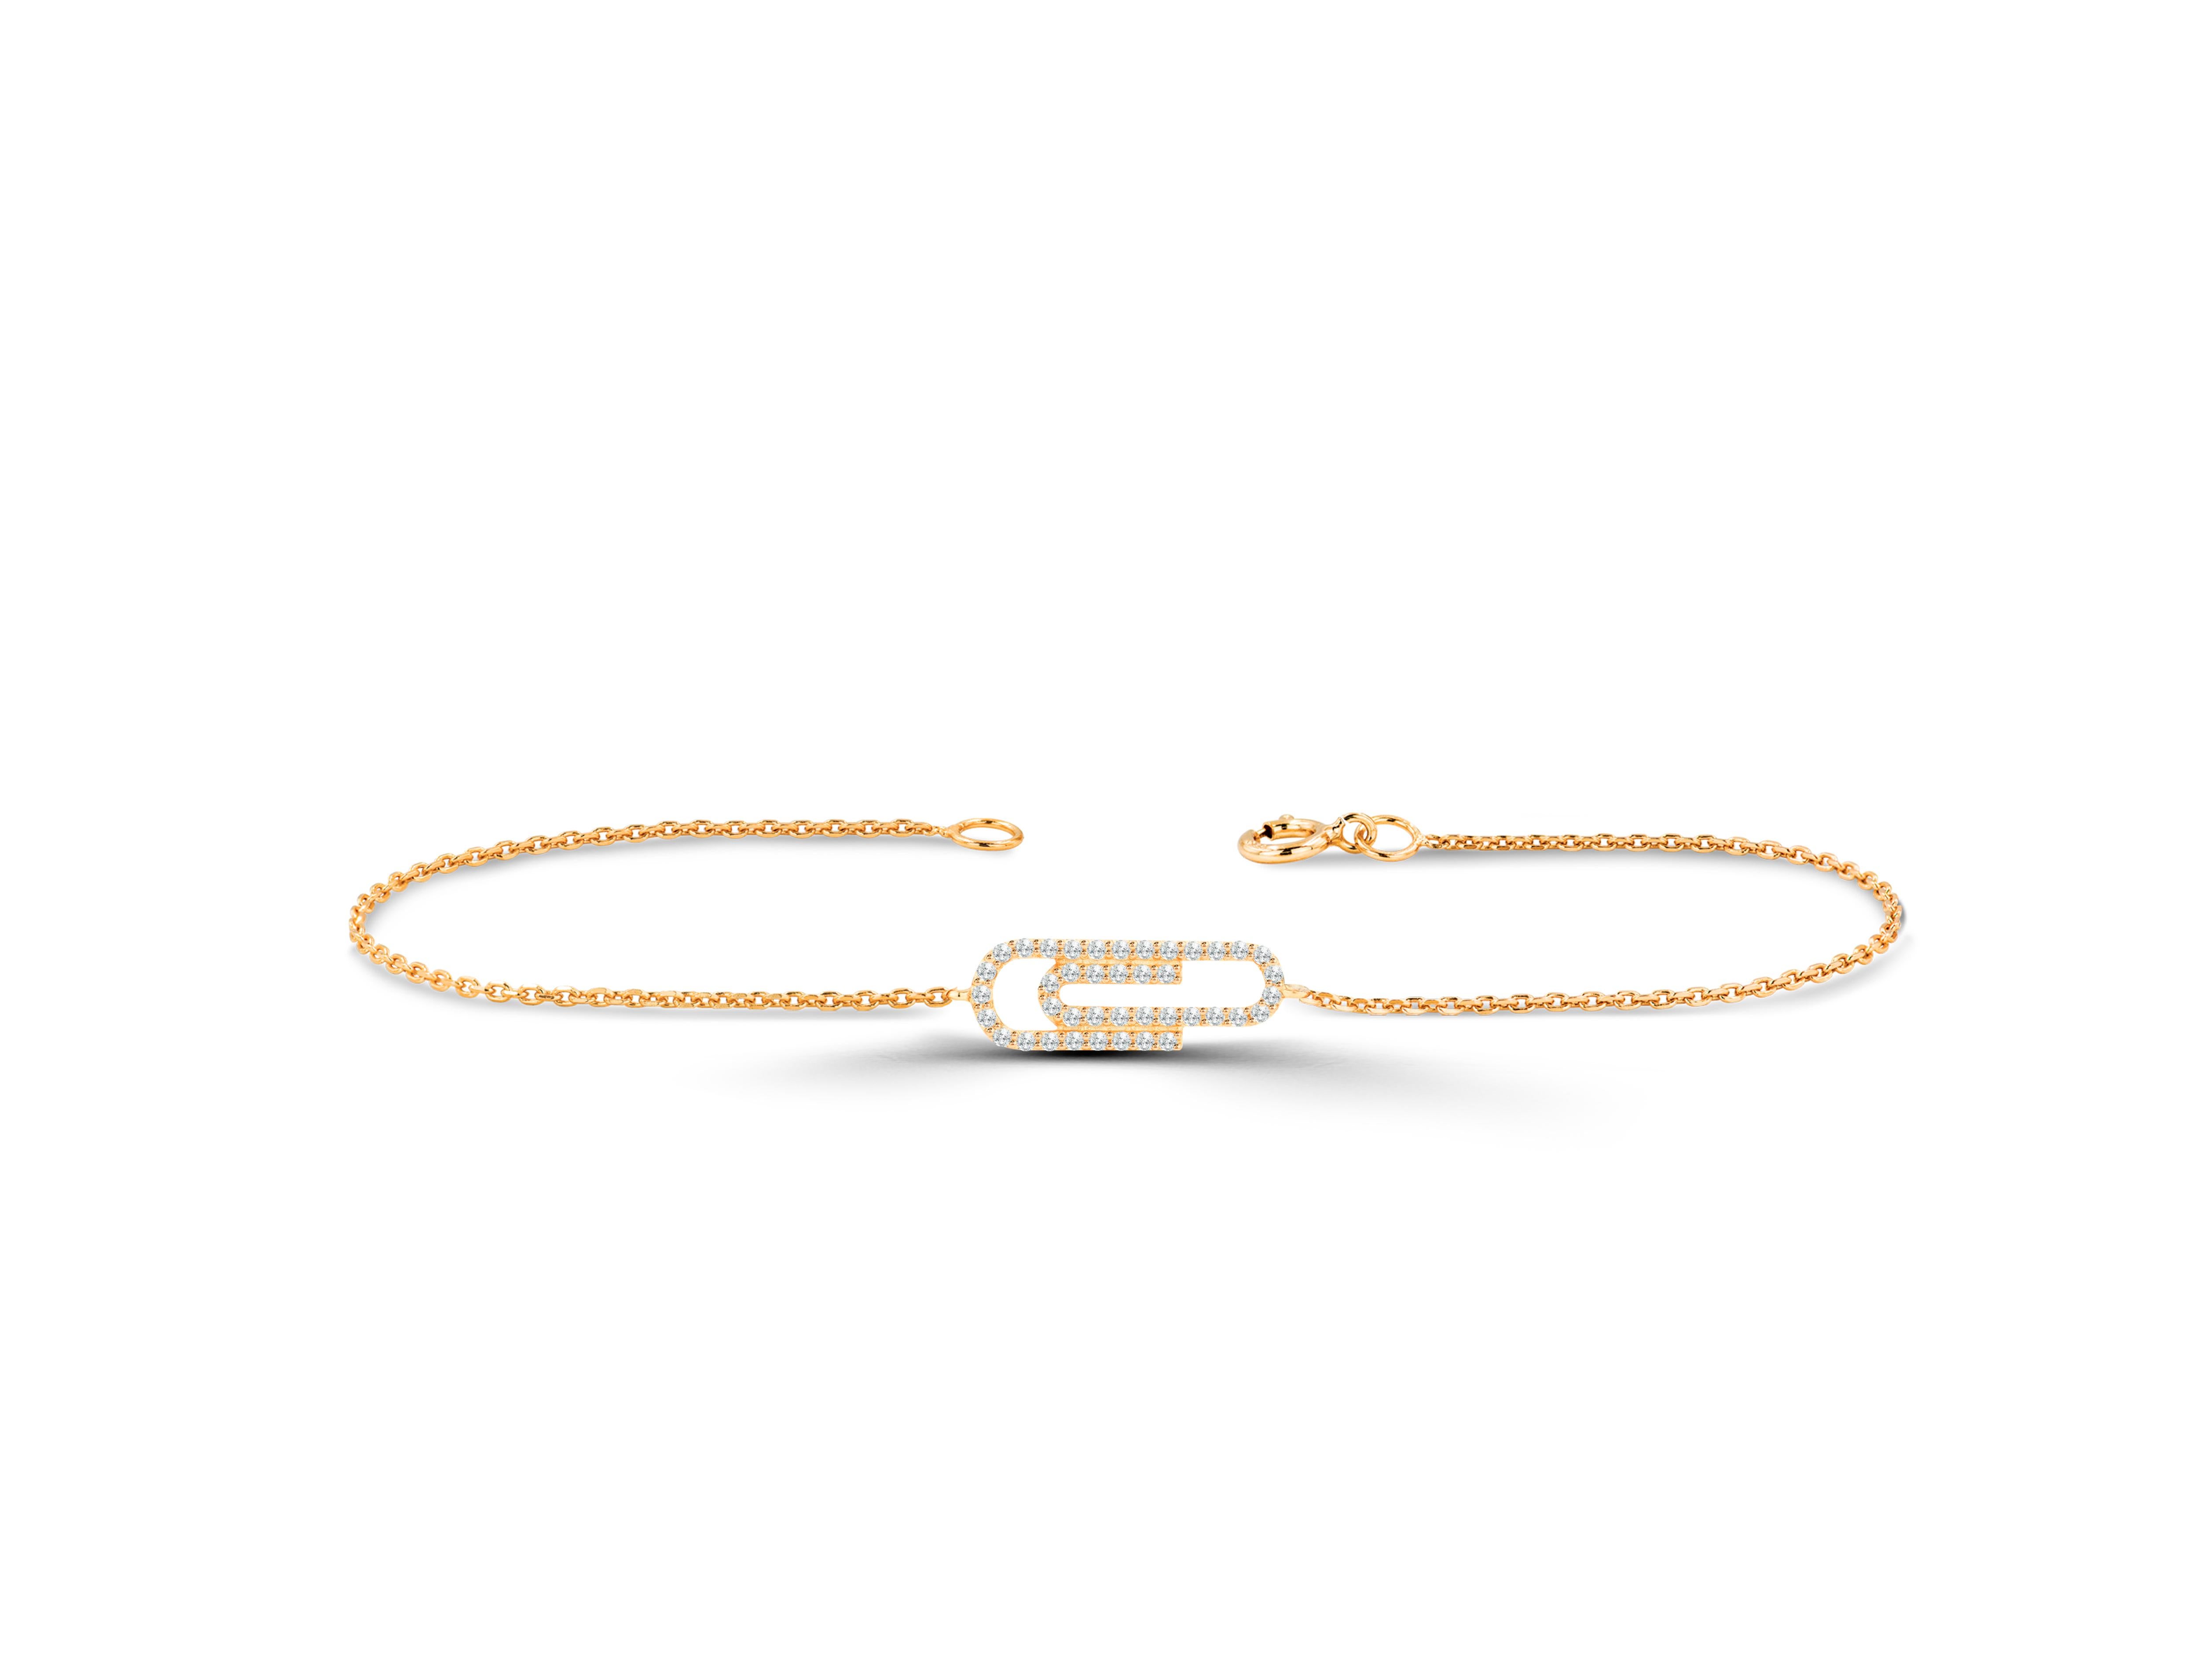 Dieses schöne und elegante Paper Clip-Armband ist aus reinem Gold gefertigt und besteht aus echten und natürlichen Diamanten. Dieses Armband verleiht Ihrer Hand einen raffinierten und doch stilvollen Look. Das Armband kann in jeder gewünschten